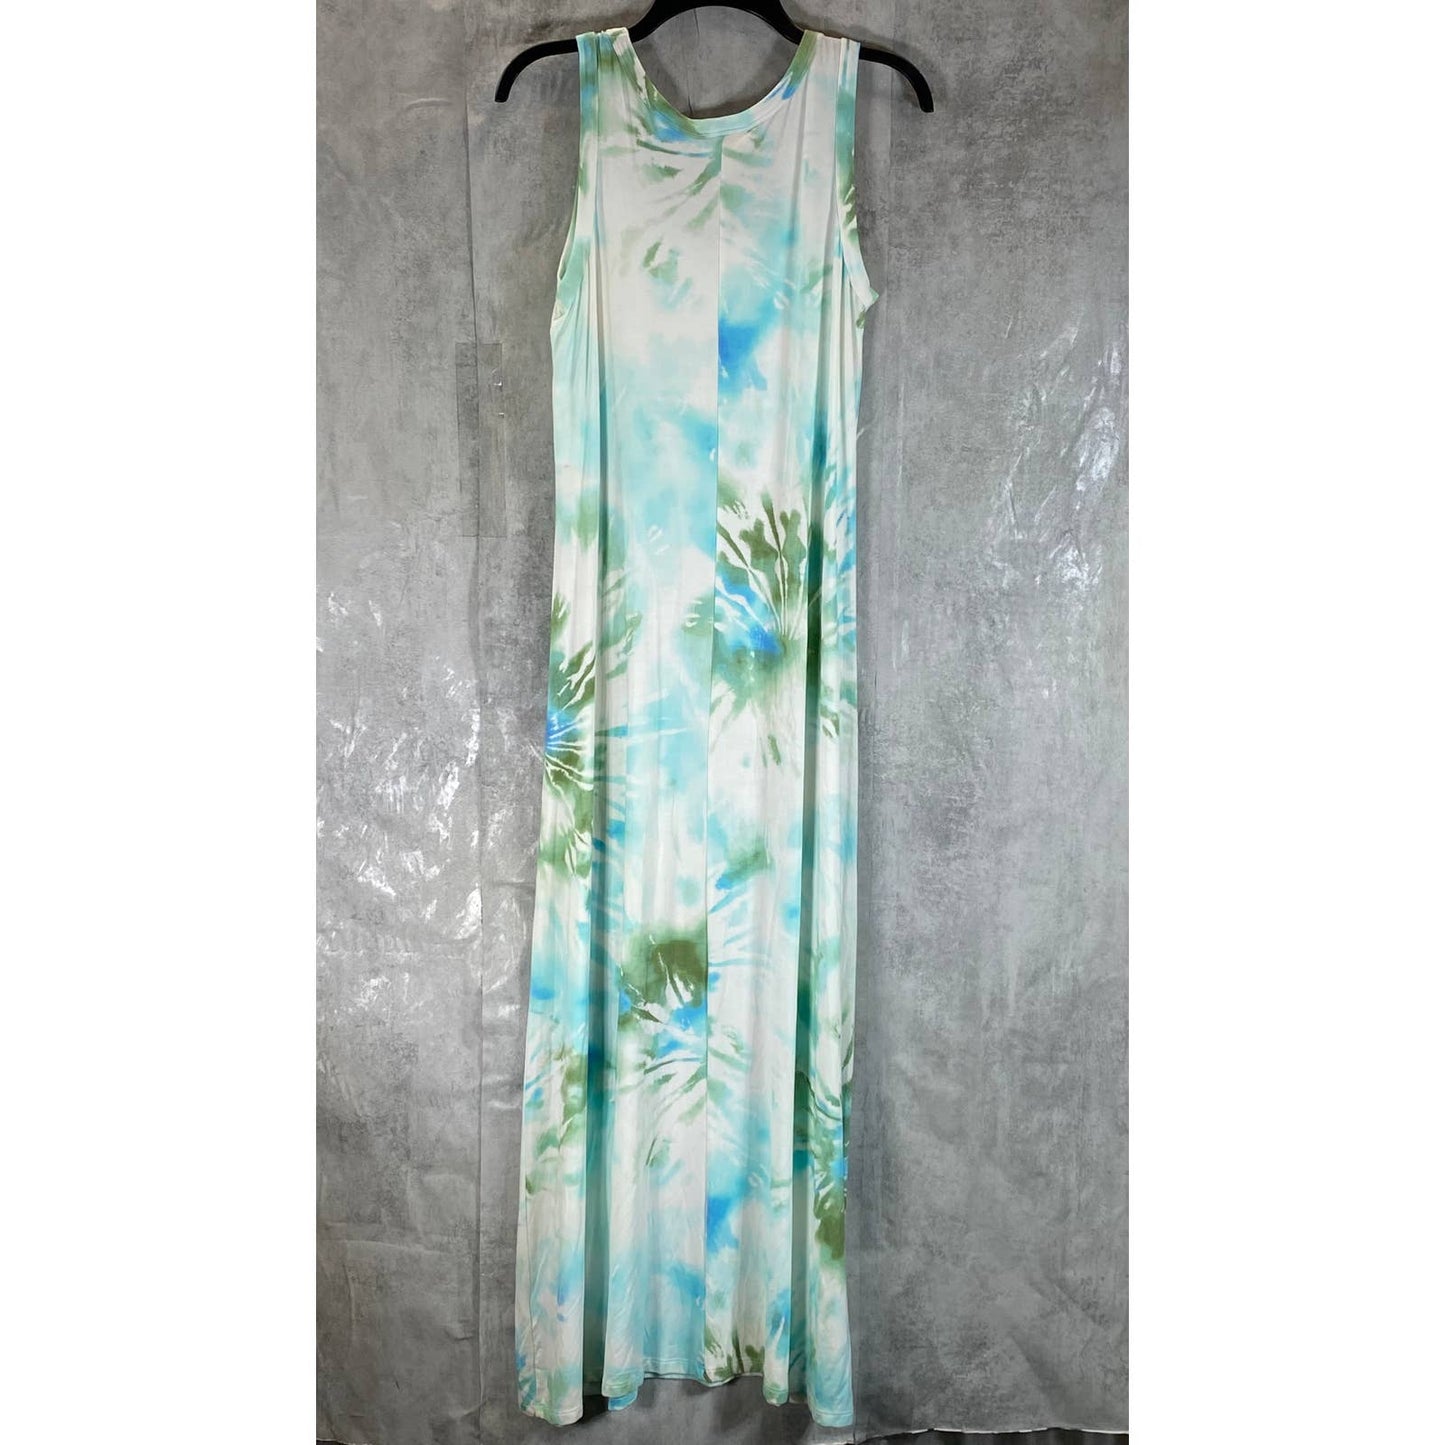 STYLE & CO Women's Vine Green Dye Printed Sleeveless Tie-Dye Maxi Dress SZ M